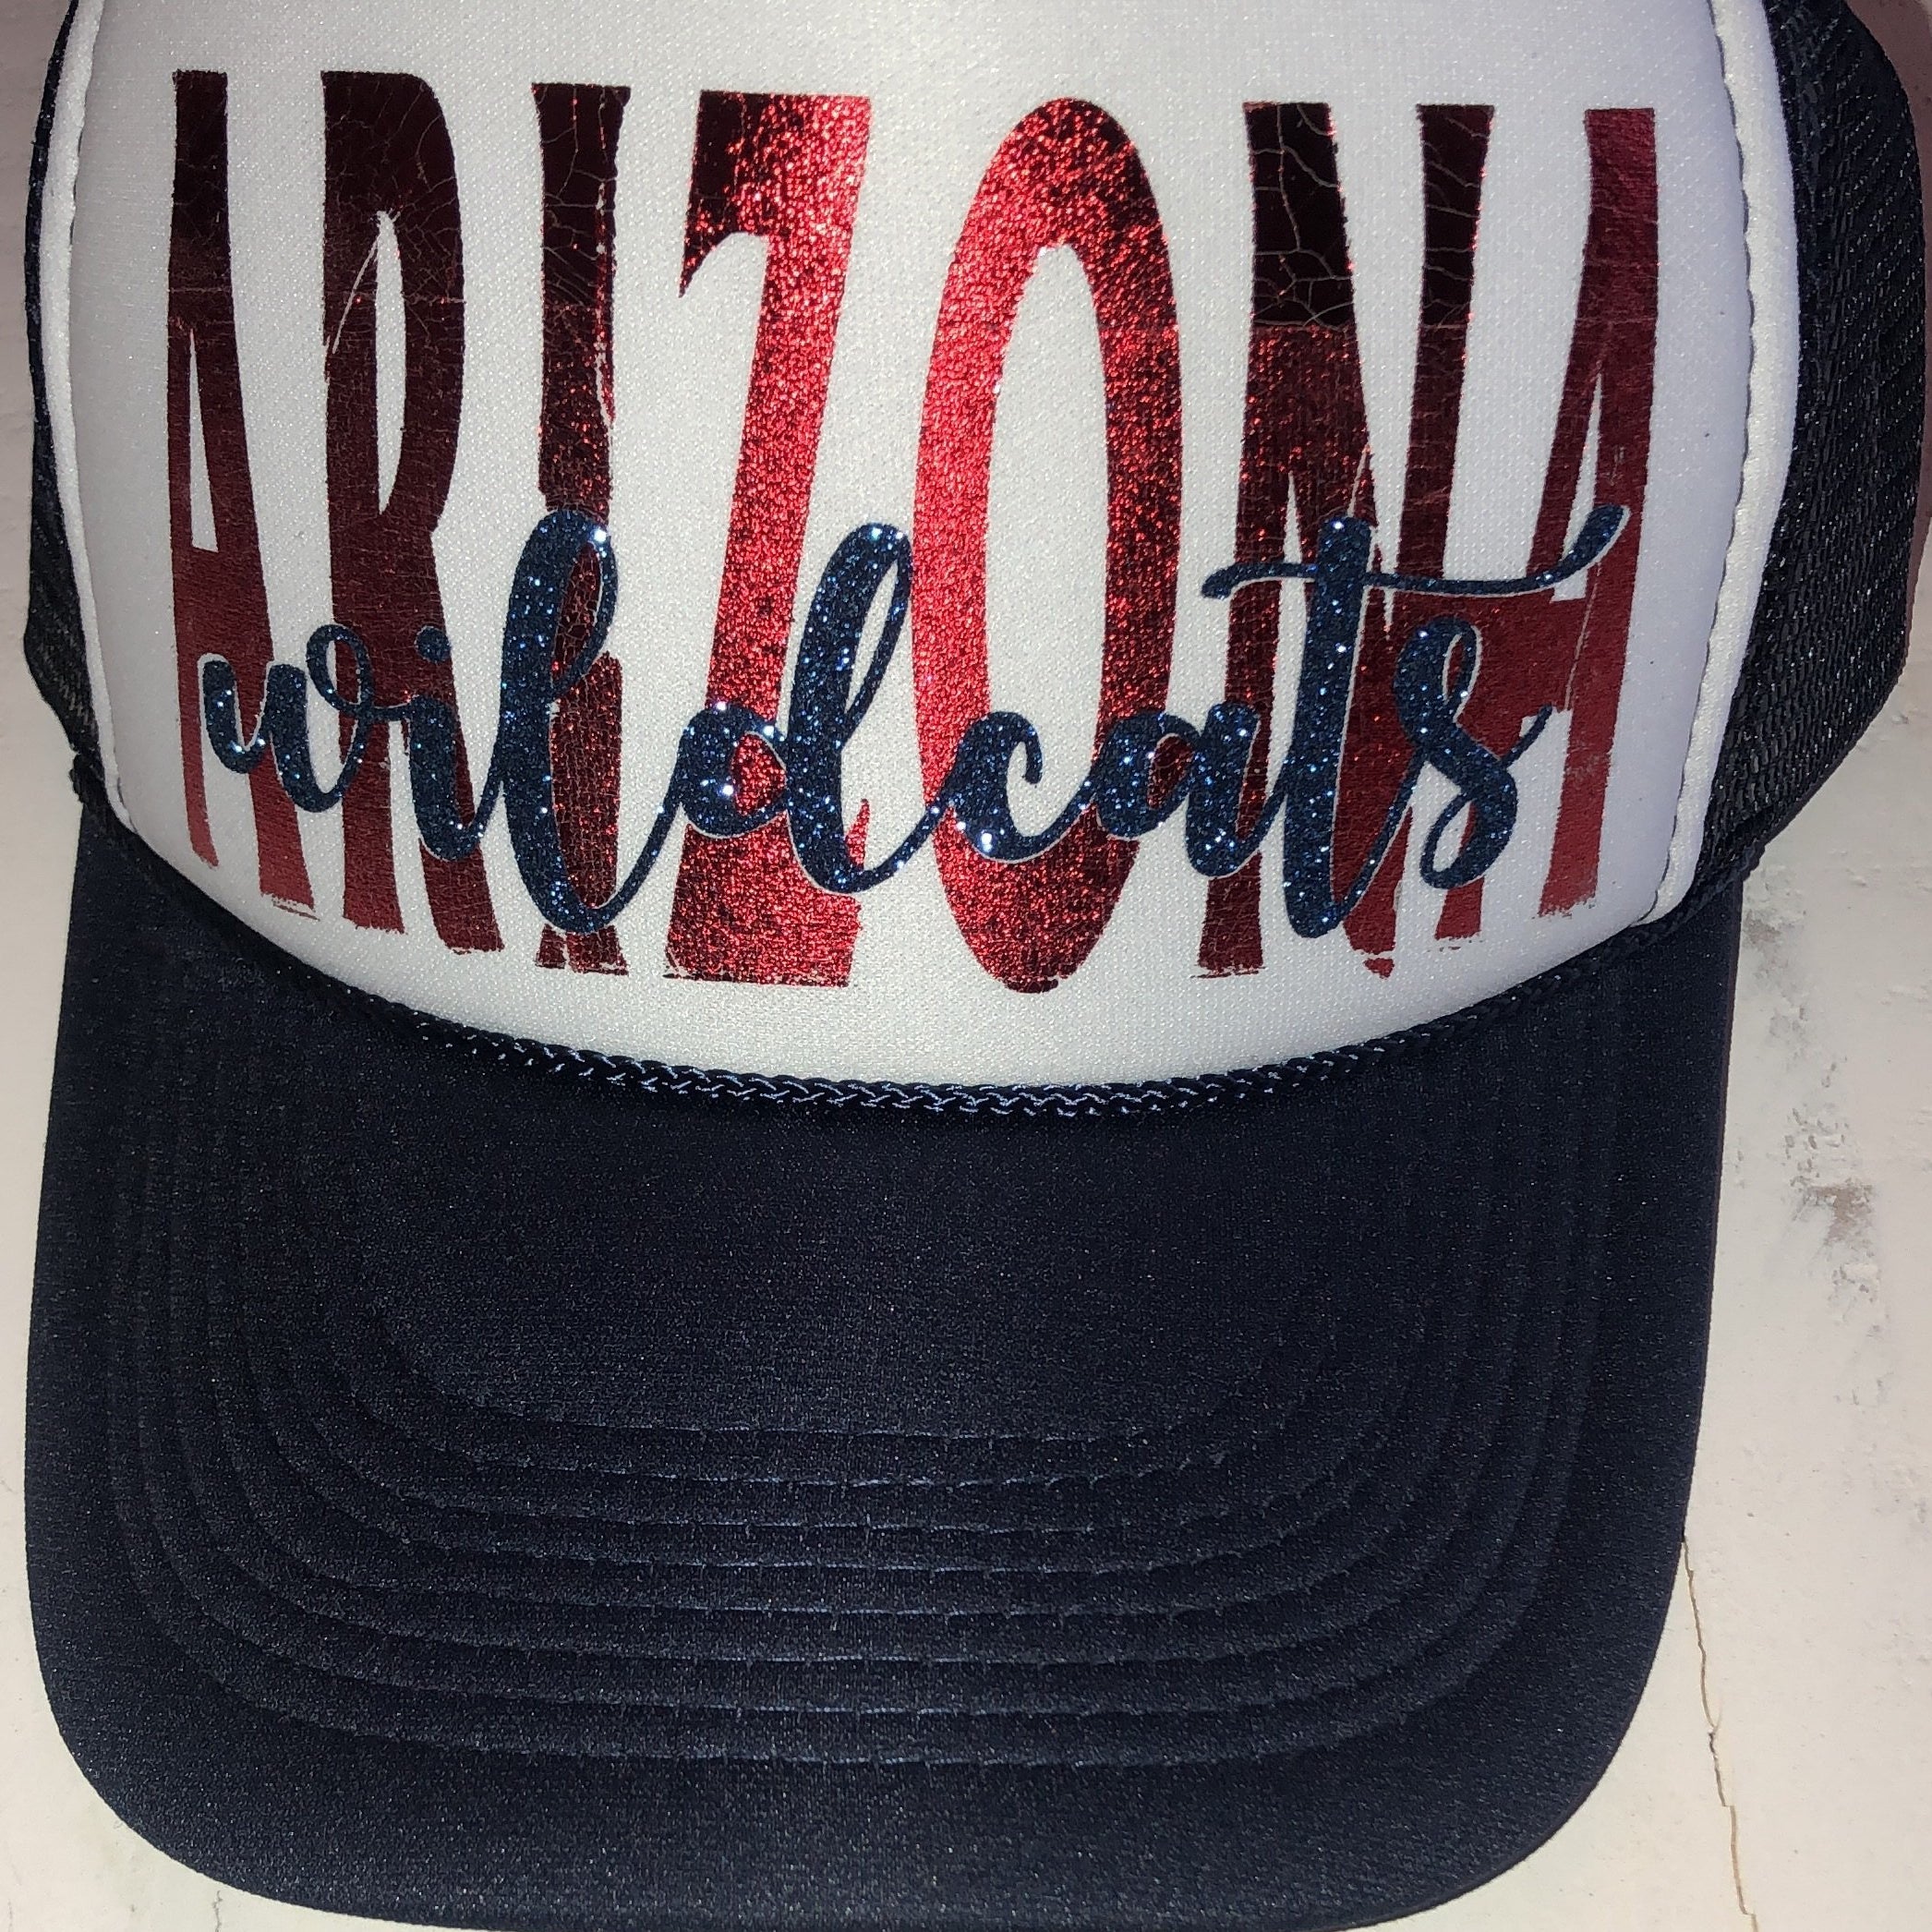 arizona wildcats trucker hat